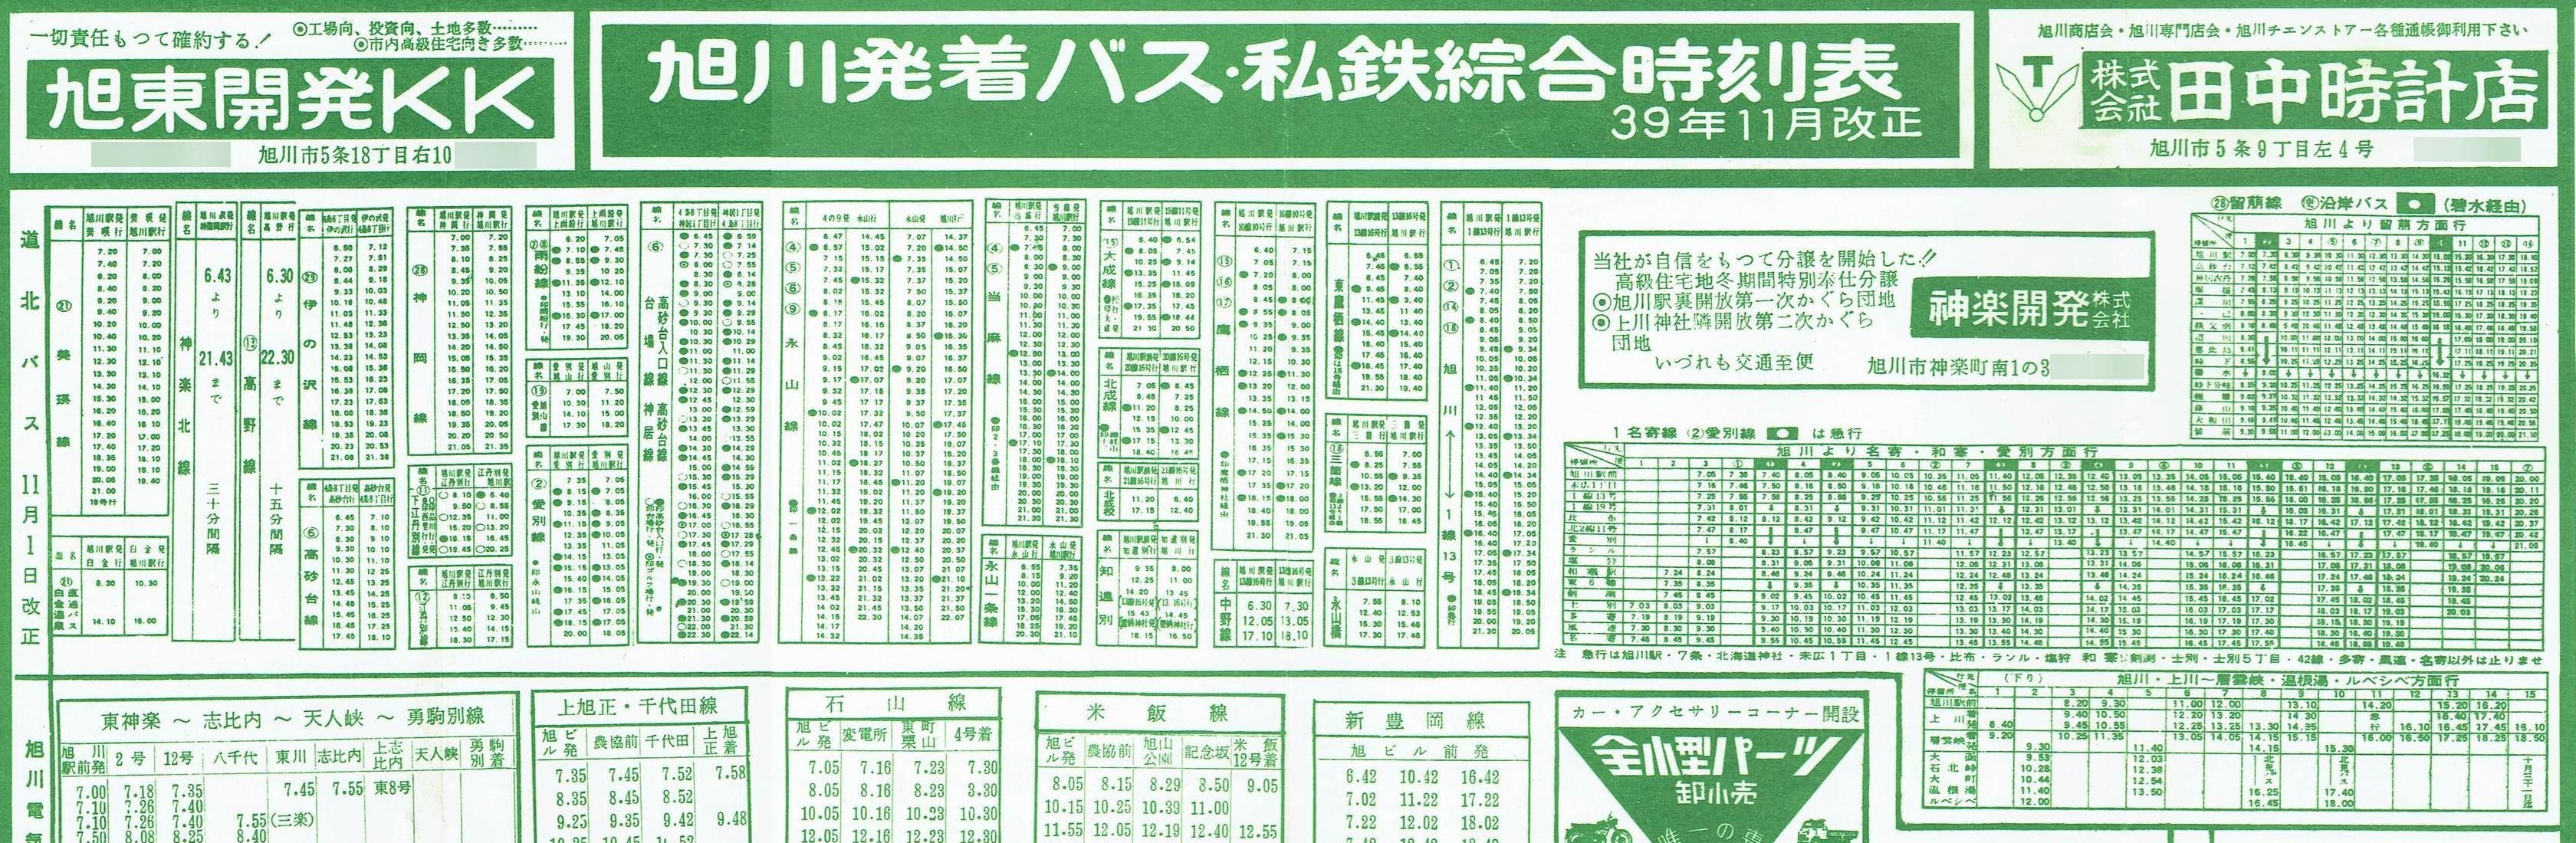 1964-11改正_旭川発着バス・私鉄綜合時刻表(3)